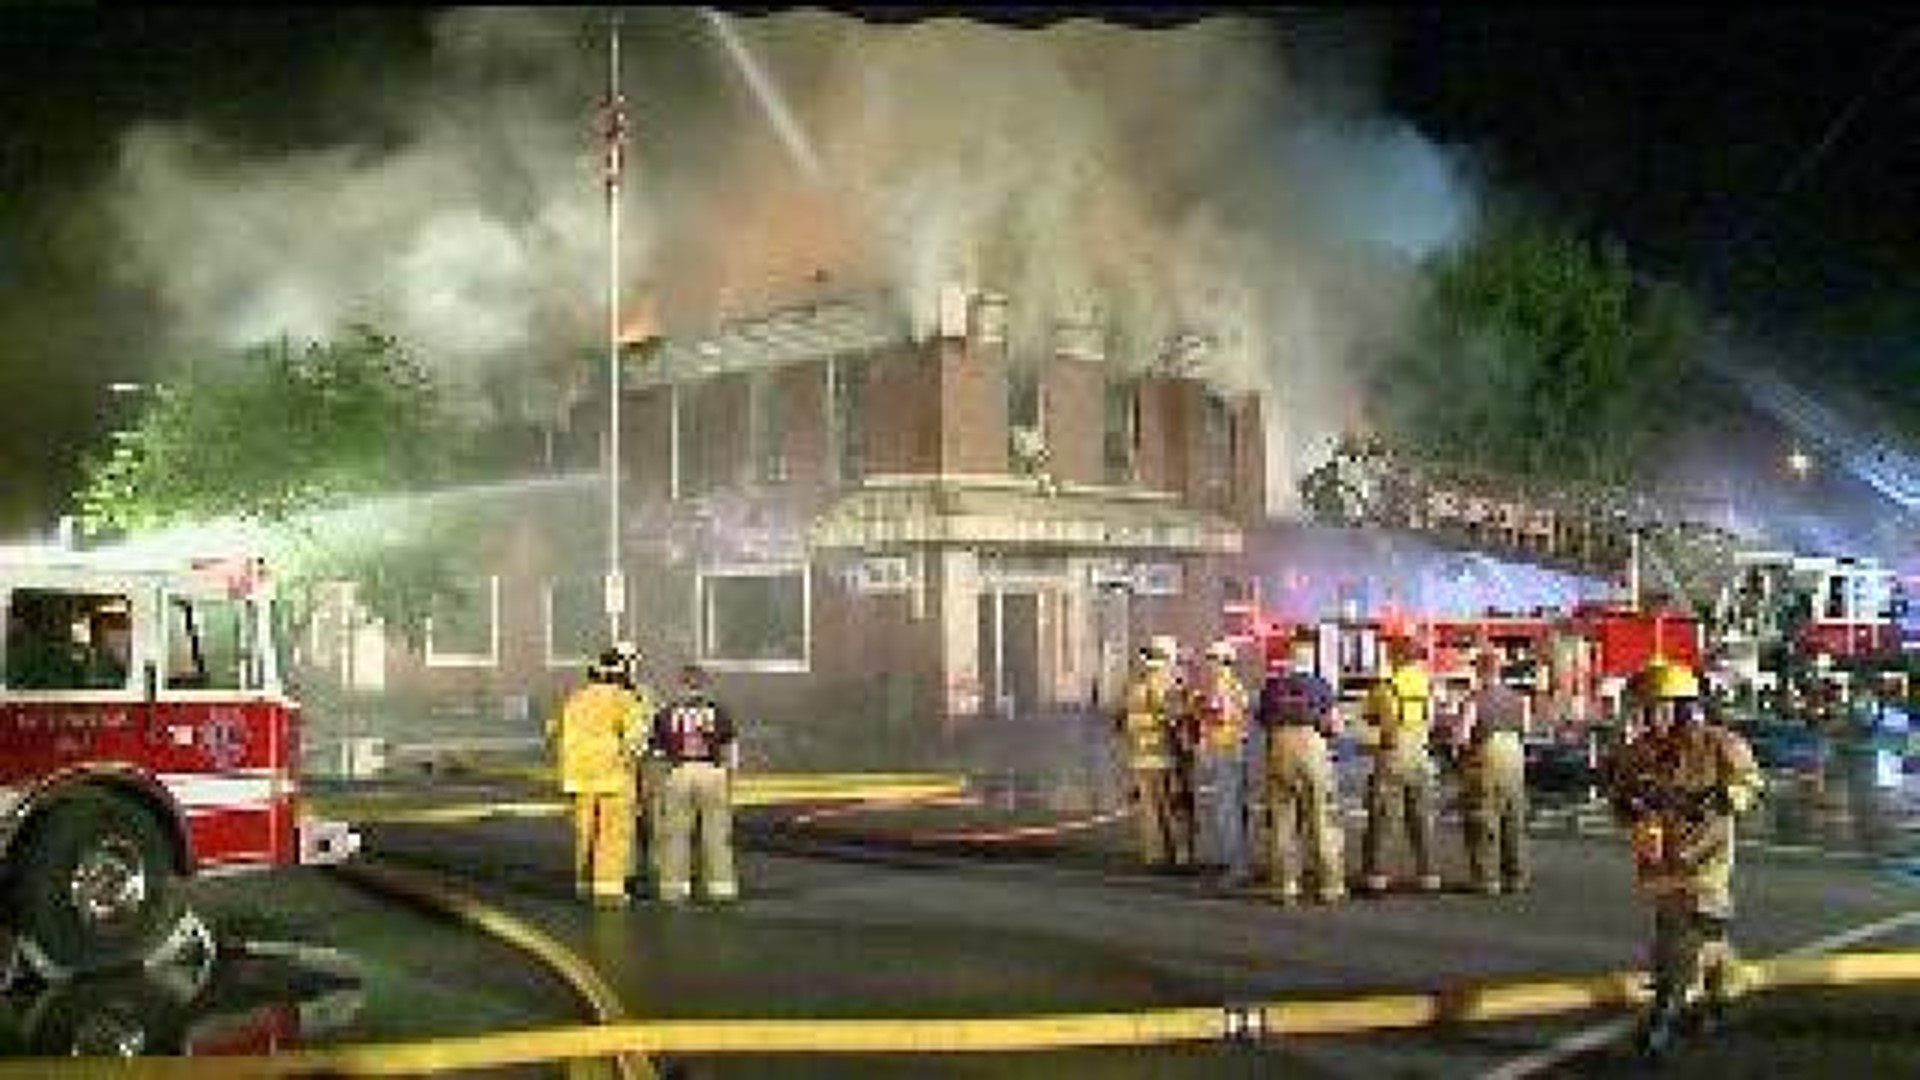 VFW Fire Creates Loss in Community